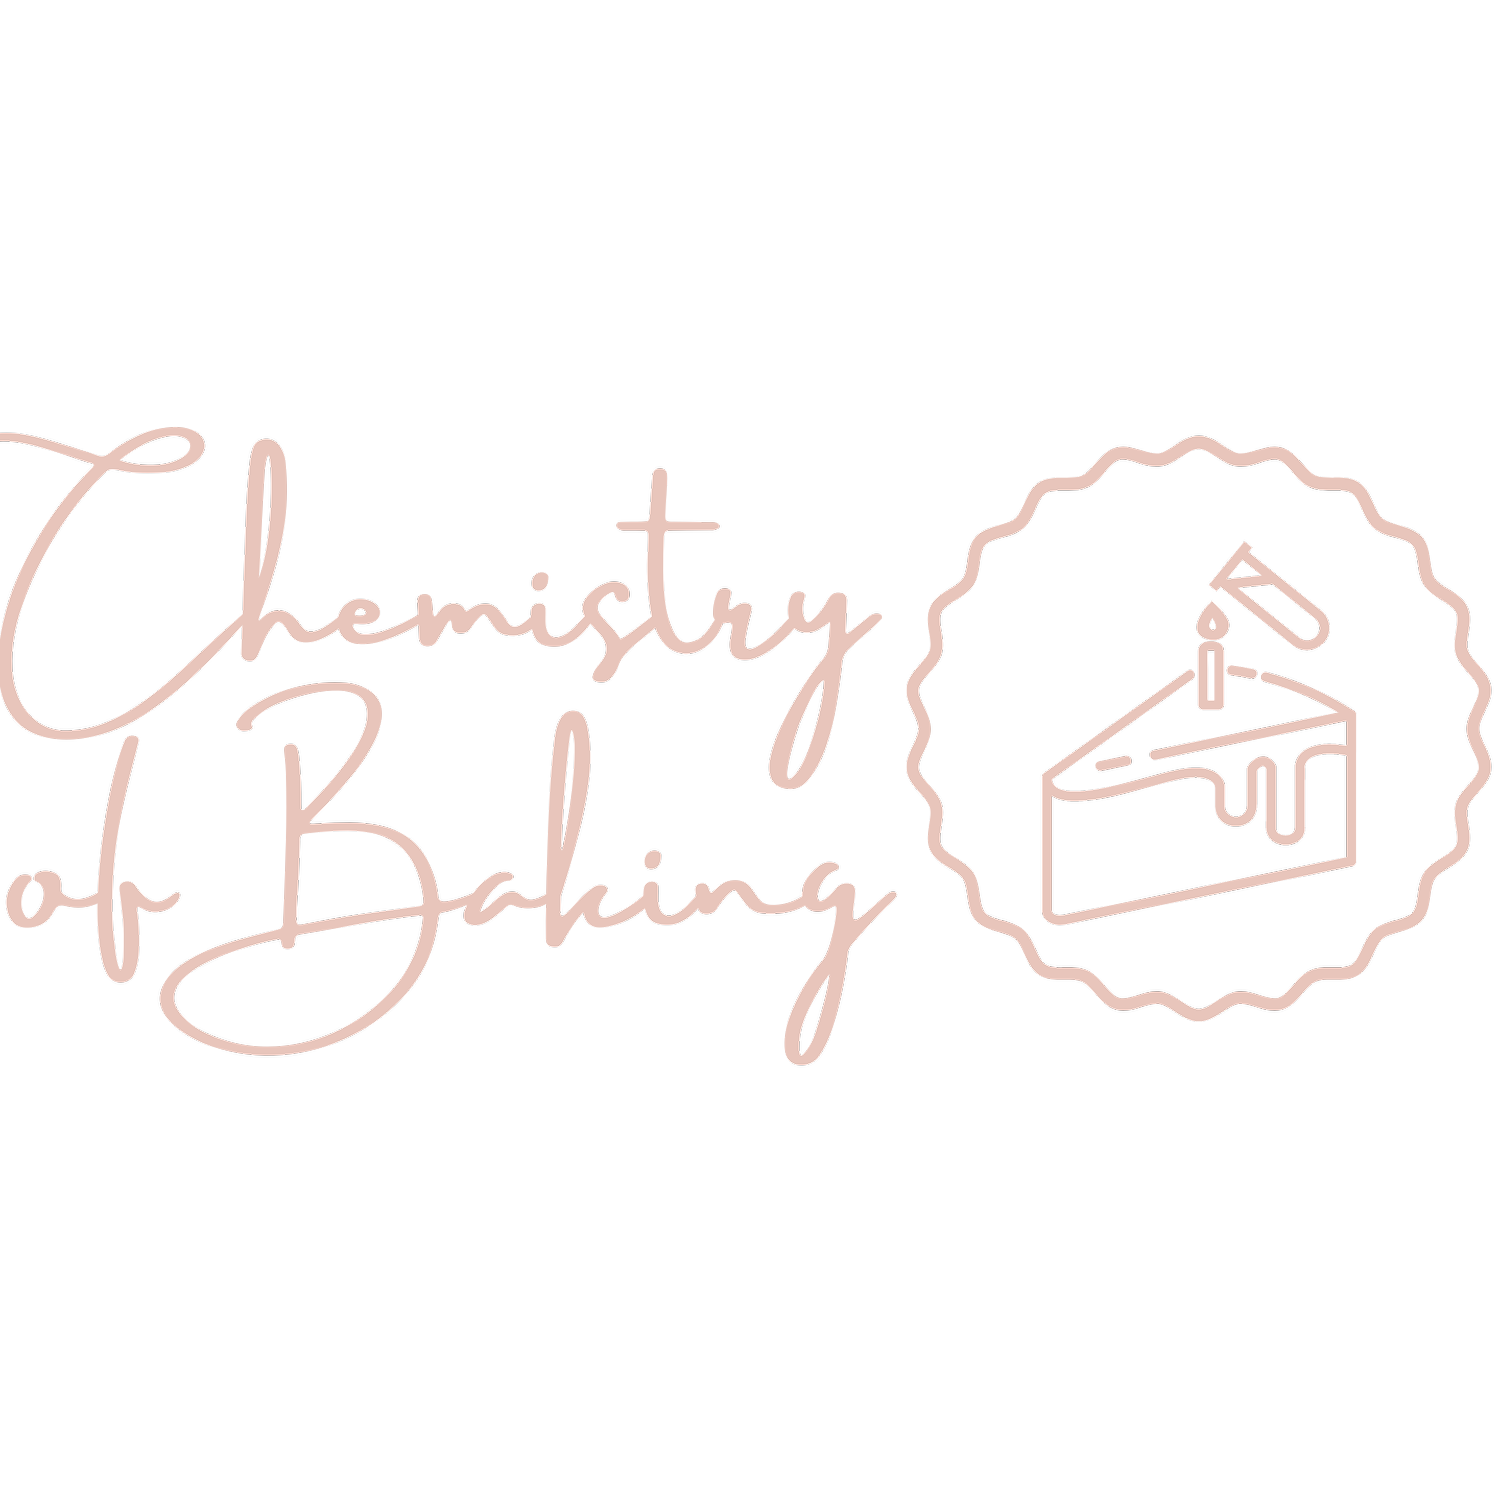 Chemistry of Baking